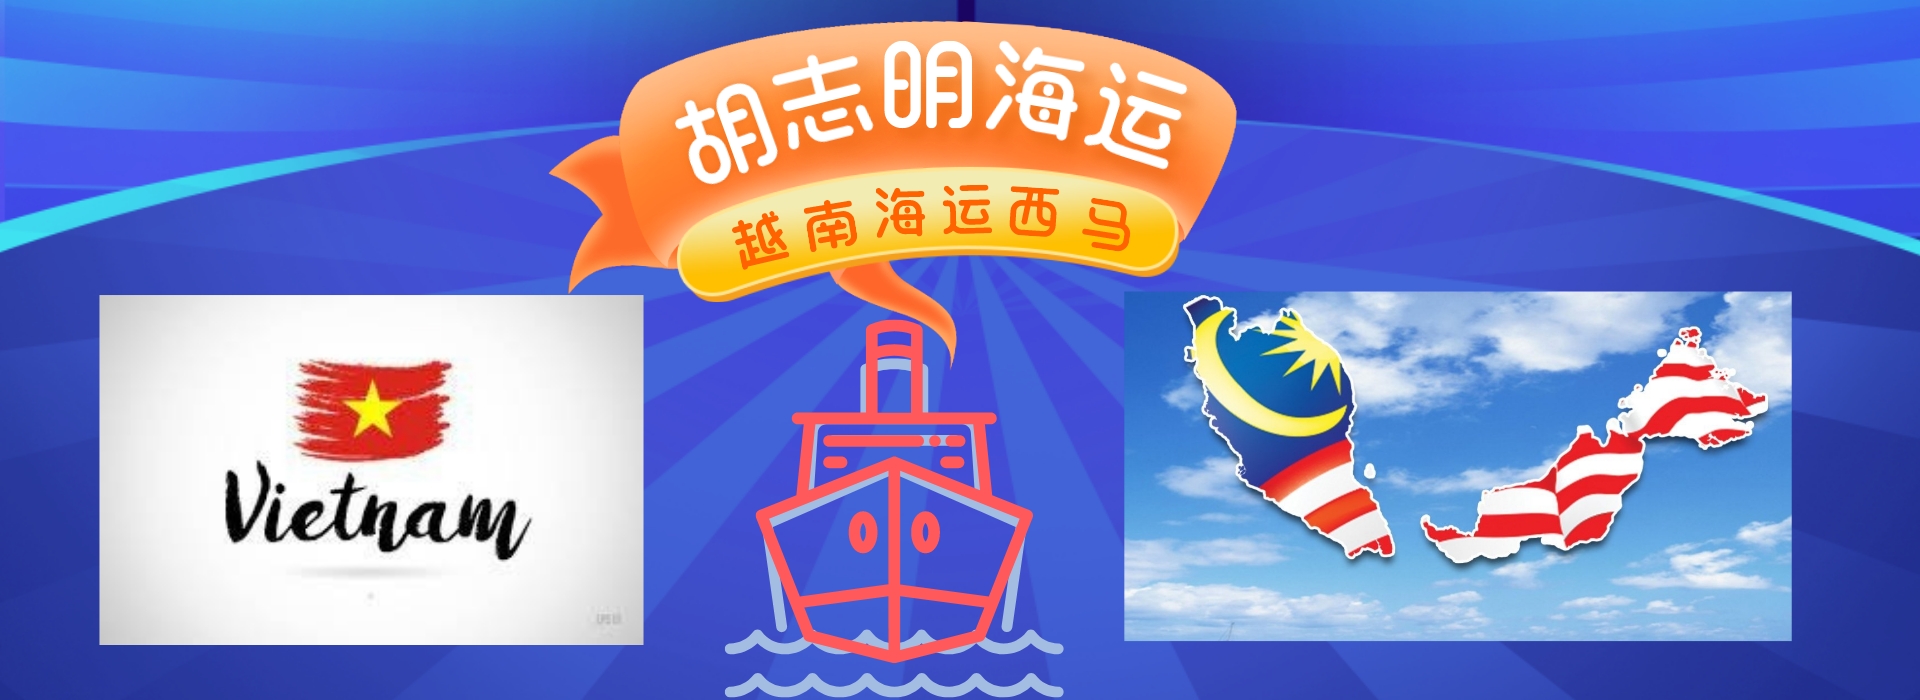 /越南胡志明到马来西亚立方海运服务